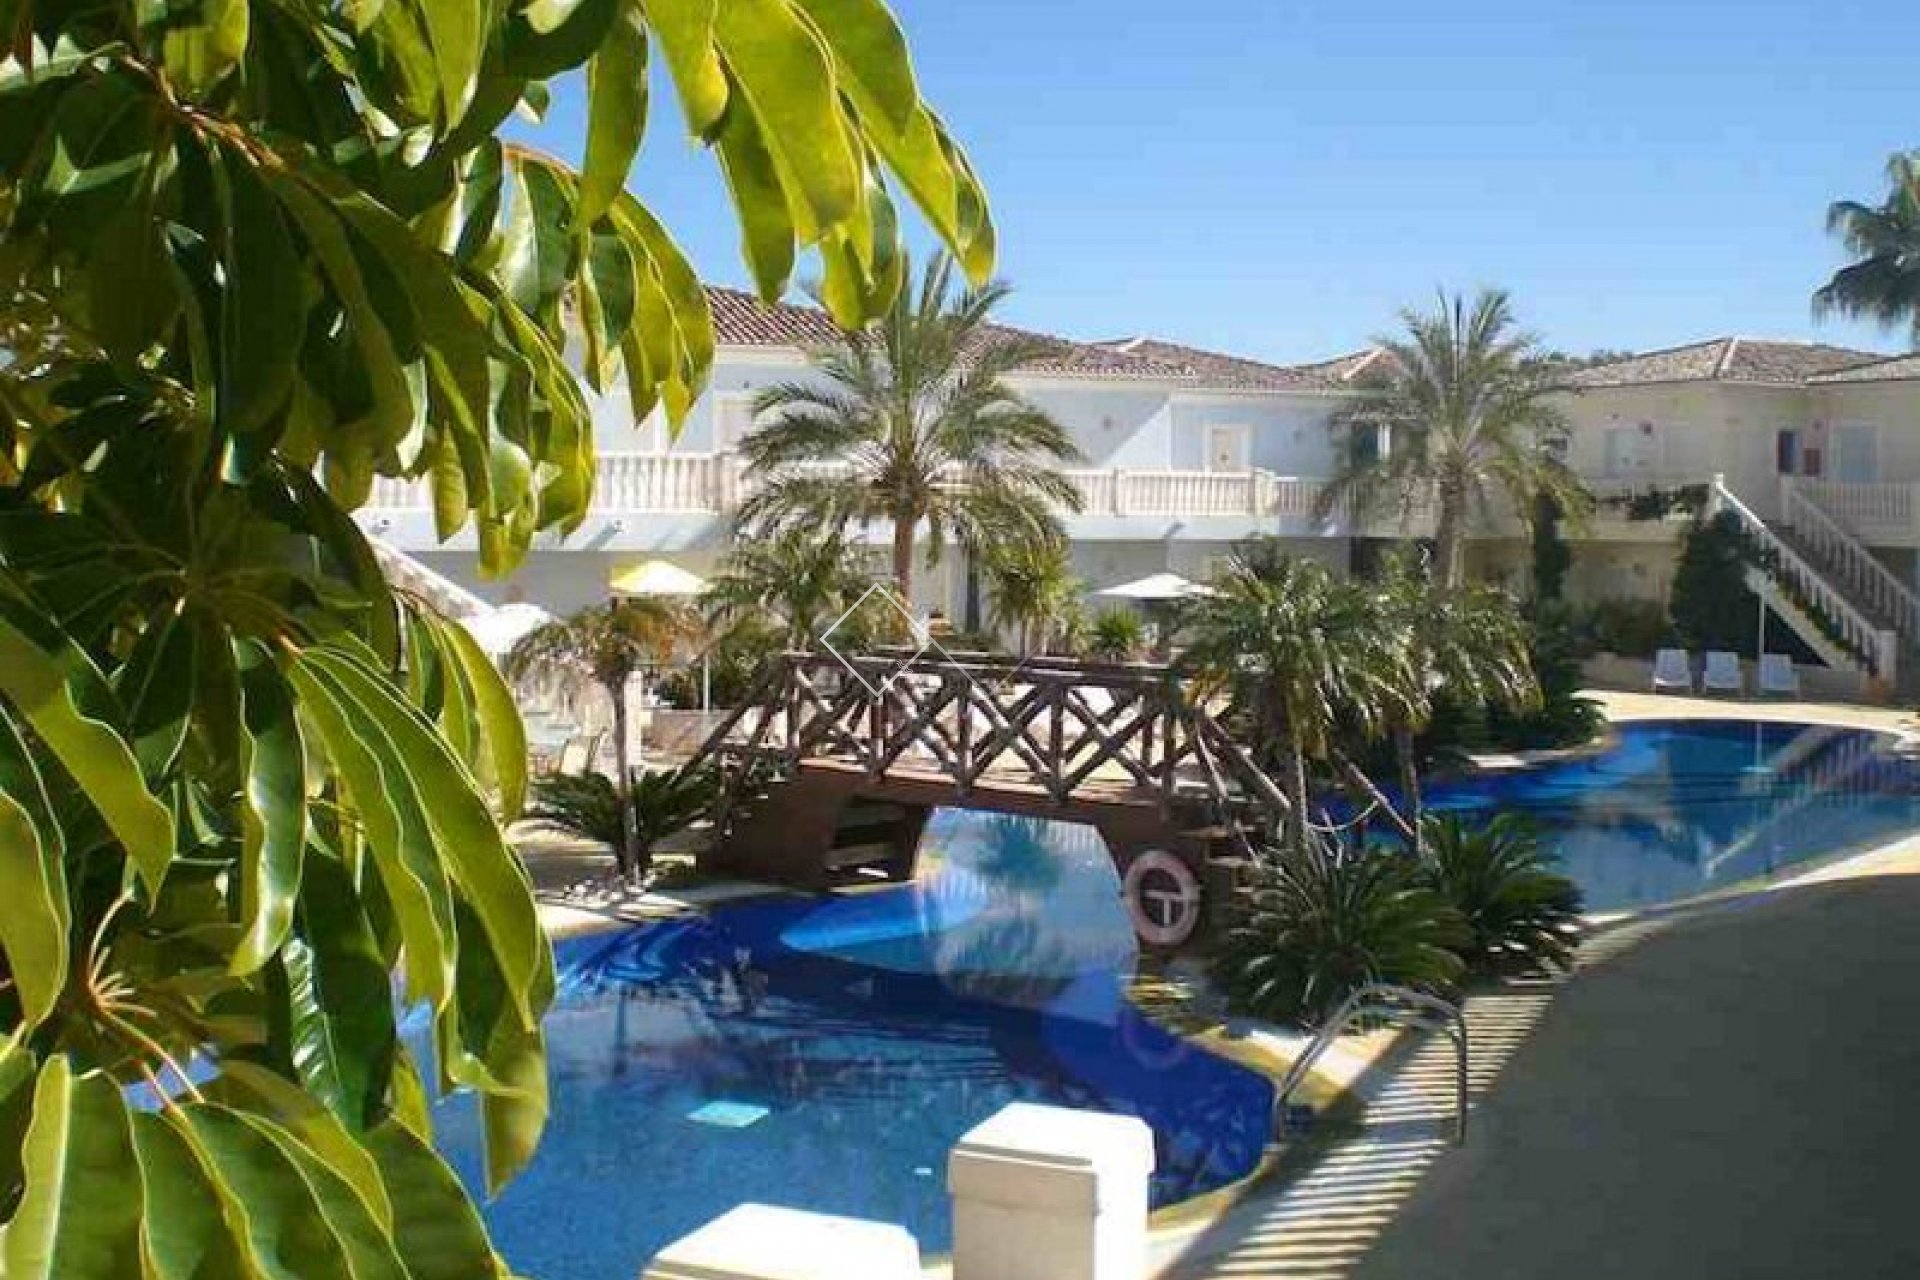 piscina tropical - Se vende un encantador apartamento en Benissa, a sólo 800 metros de la playa